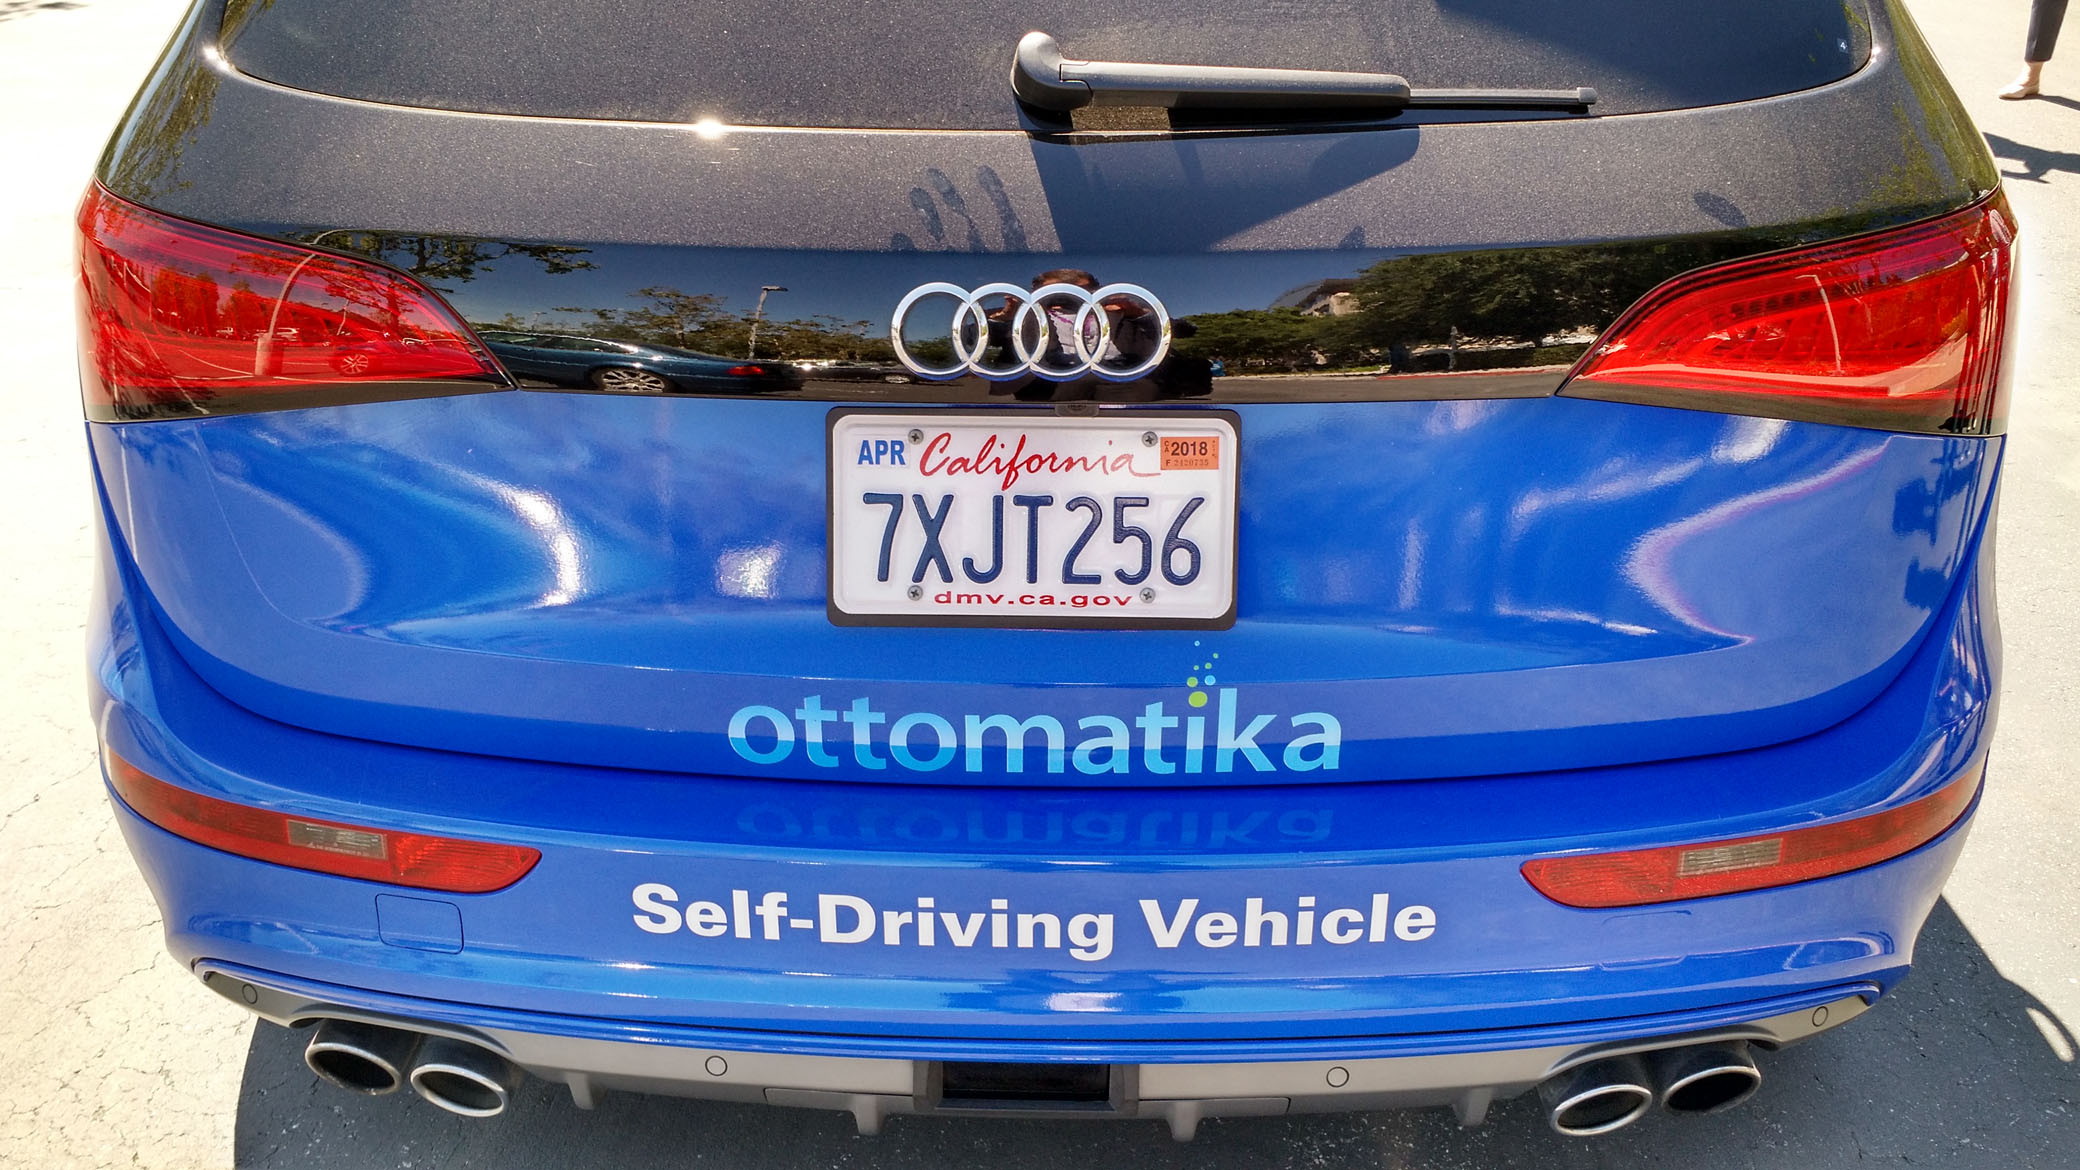 Delphi’s autonomous Audi test car